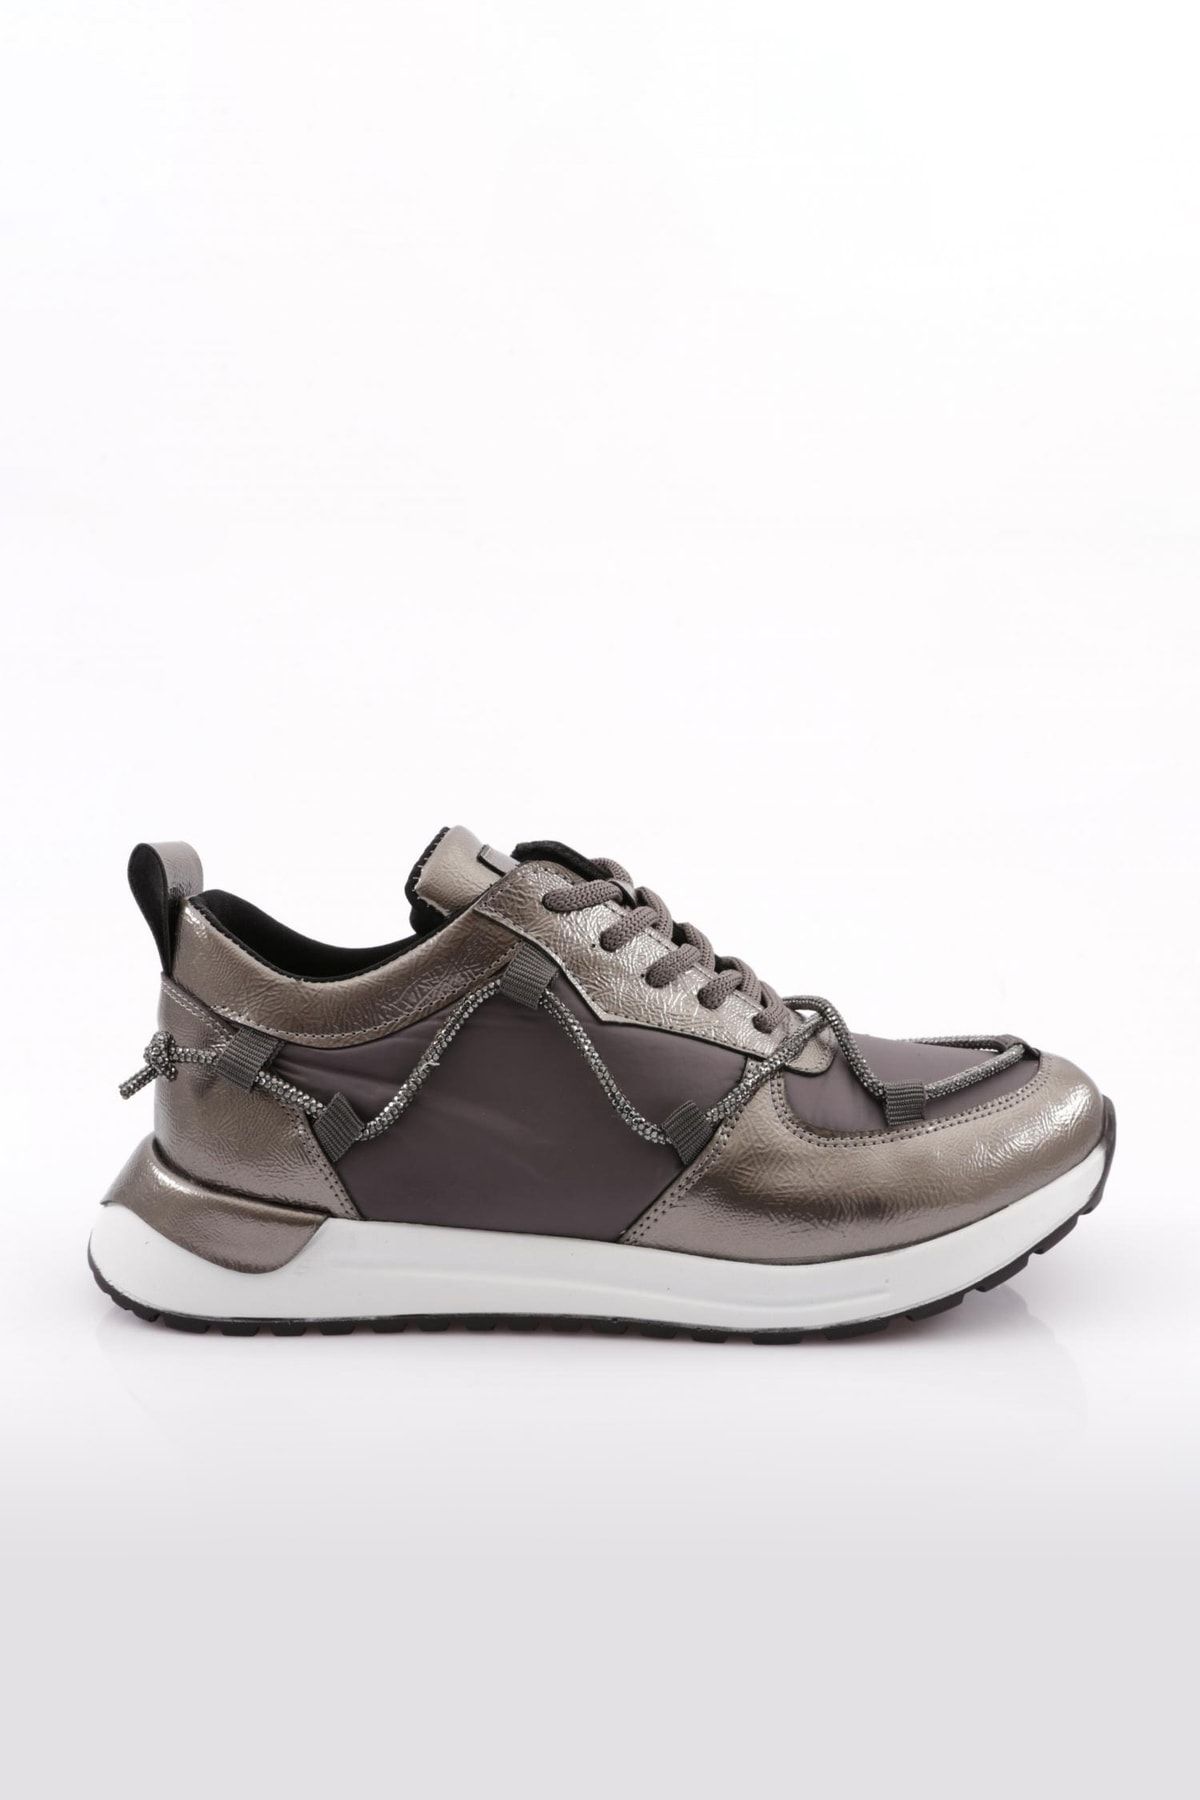 Dgn 254 Kadın Strech Bağcıklı Yanlar Ip Detaylı Sneakers Ayakkabı Platin Metalik